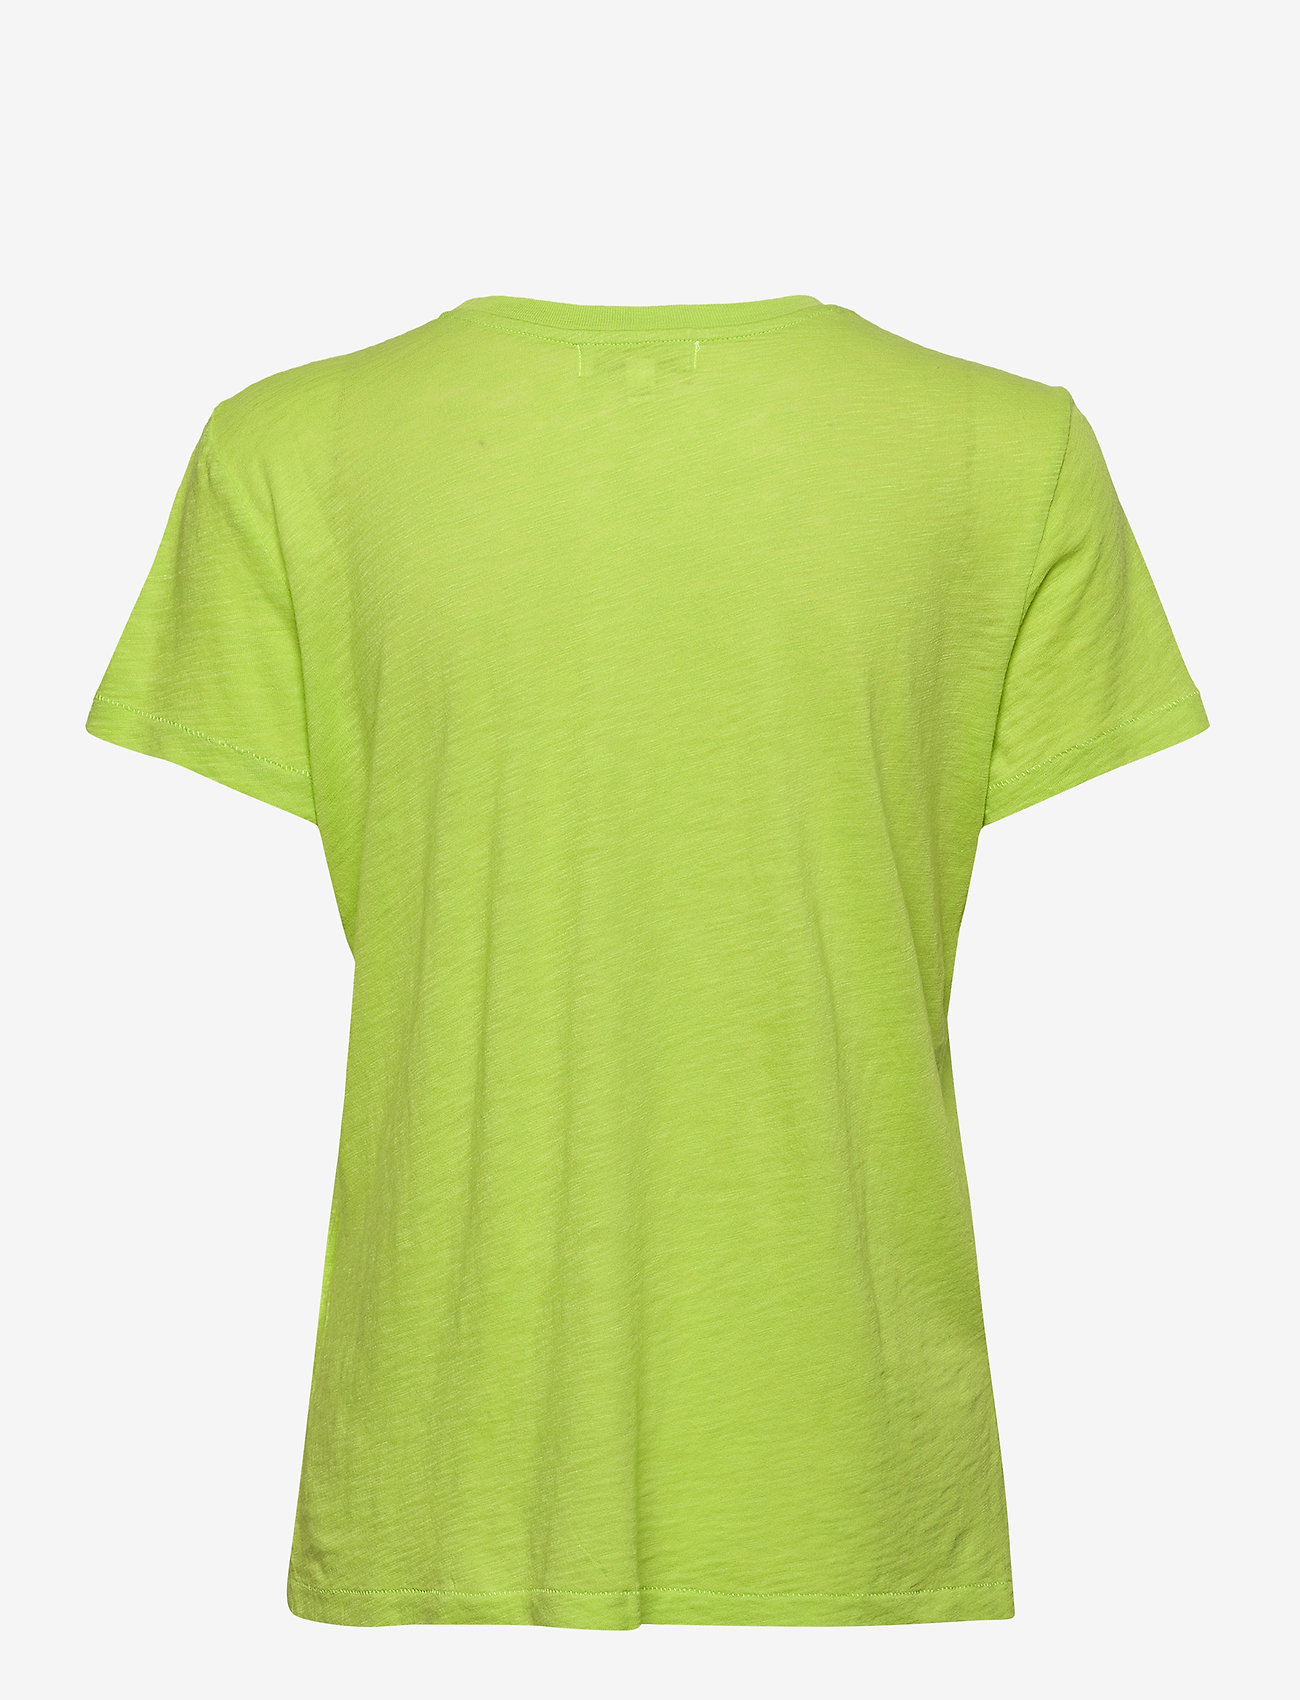 PJ Salvage - s/s shirt - topi - lime green - 1